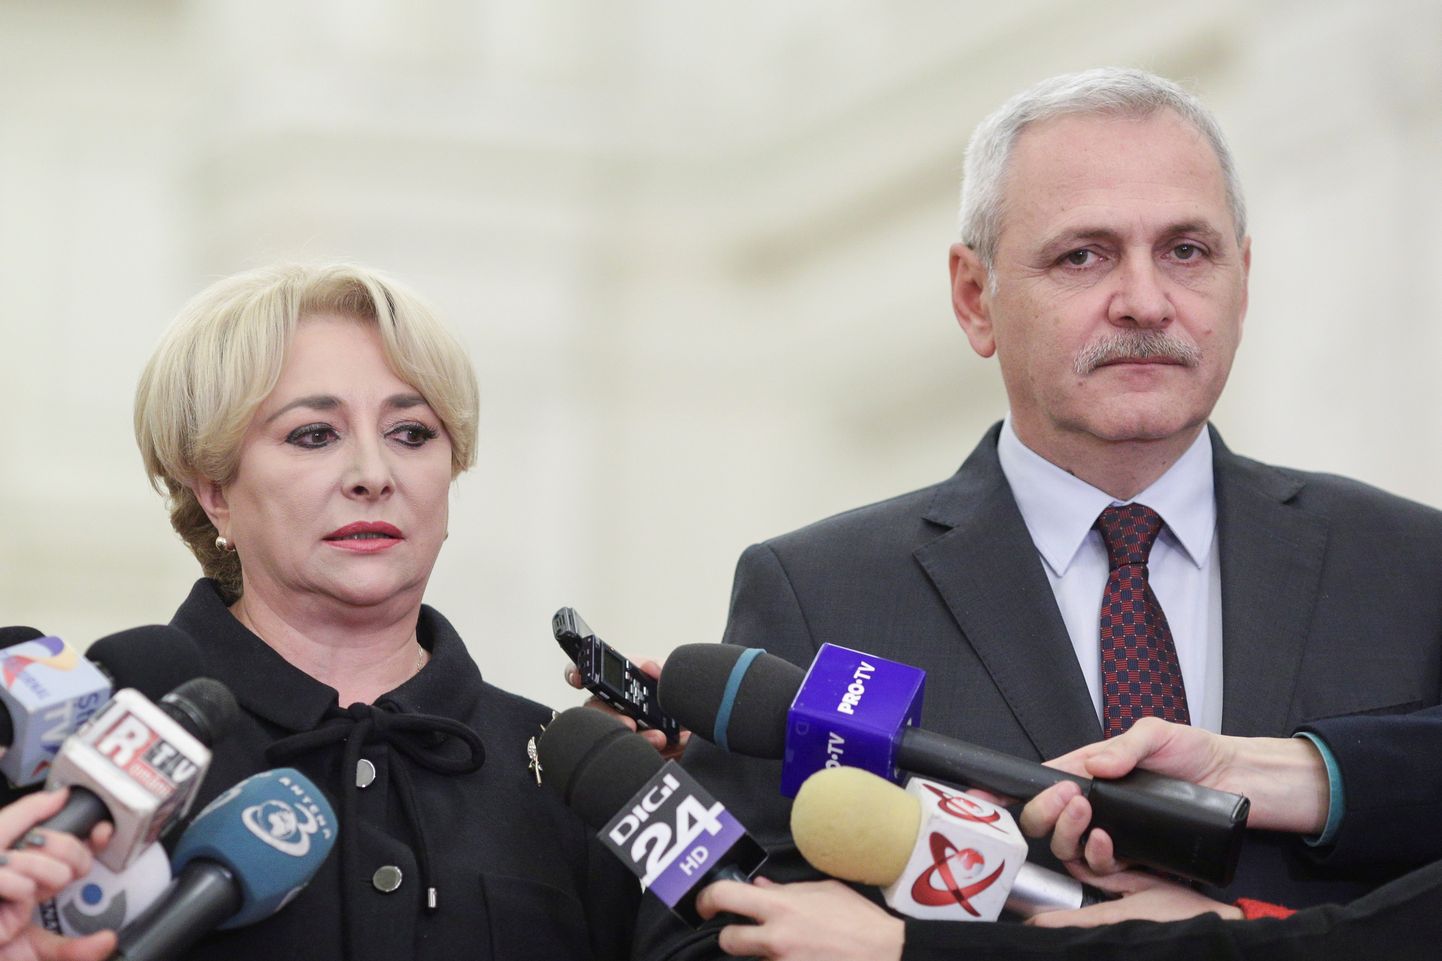 Rumeenia peaminister Viorica Dancila (vasakul) ja sotsiaaldemokraatide juht Liviu Dragnea.